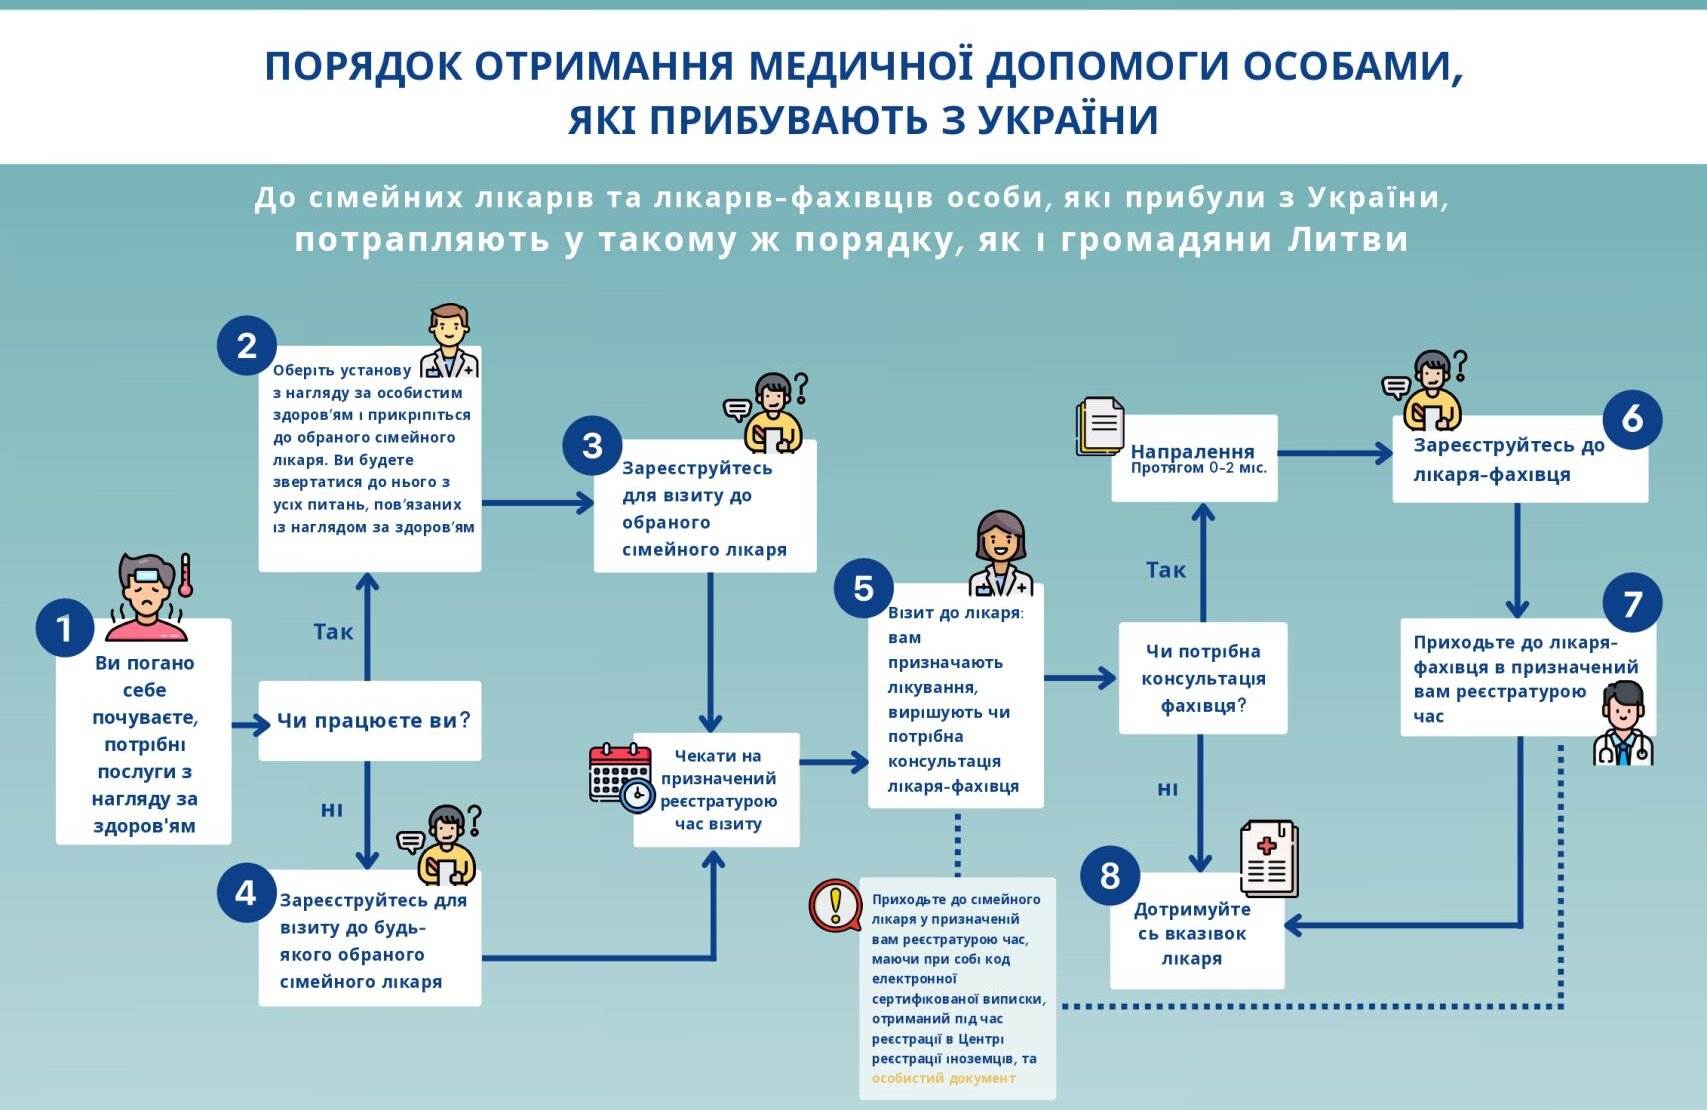 Общая схема предоставления медицинских услуг лицам из Украины